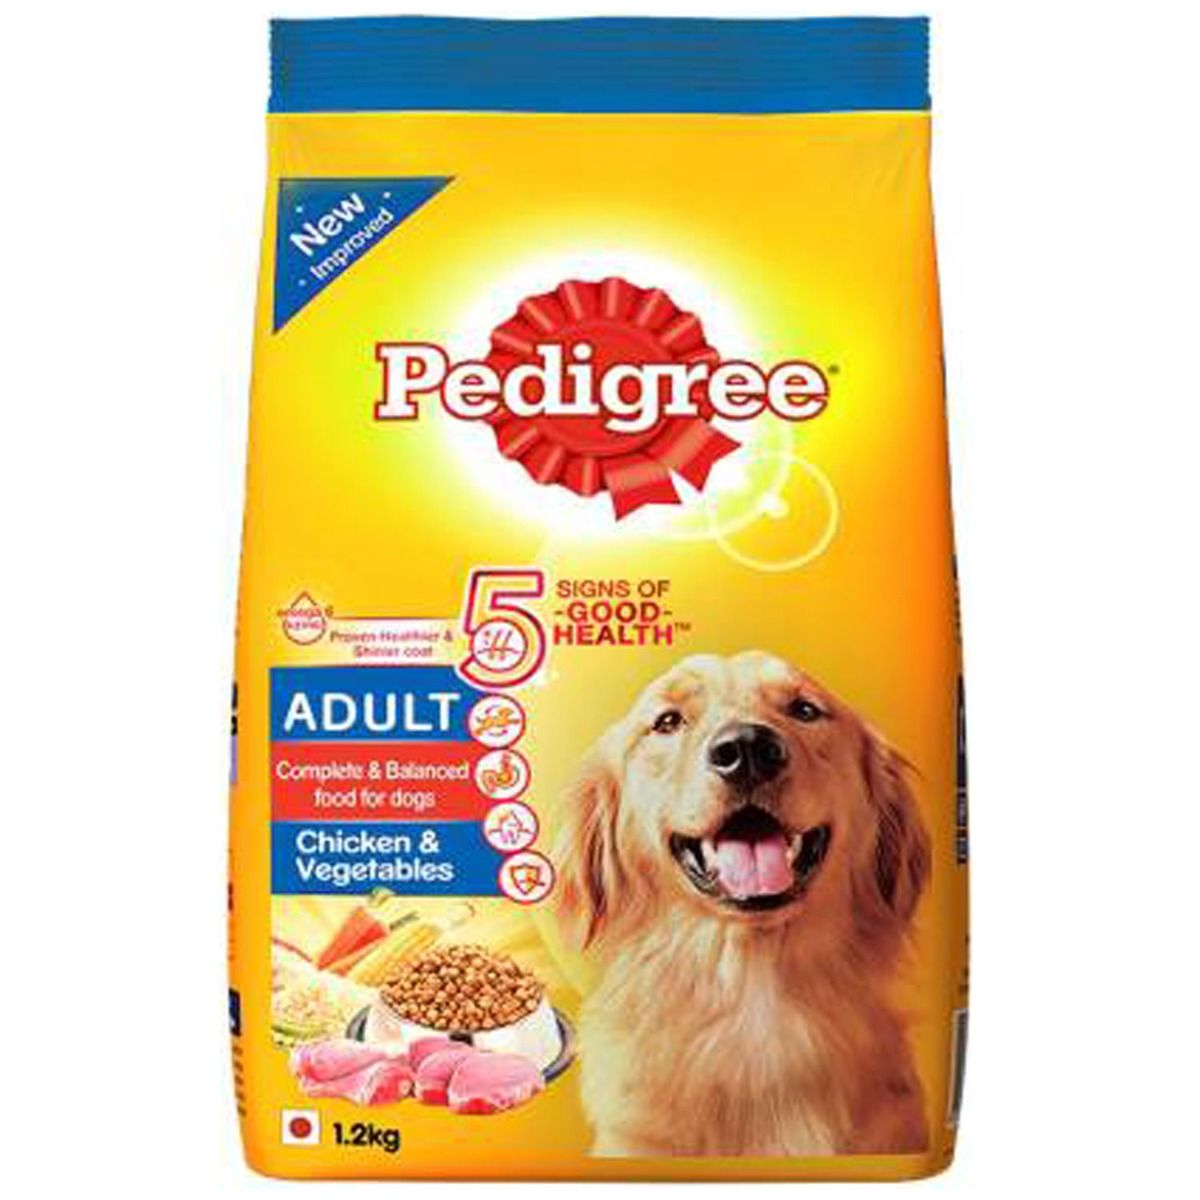 Pedigree Adult Dog Food With Chiken & Vegetables, 1.2 kg, Pack of 1 